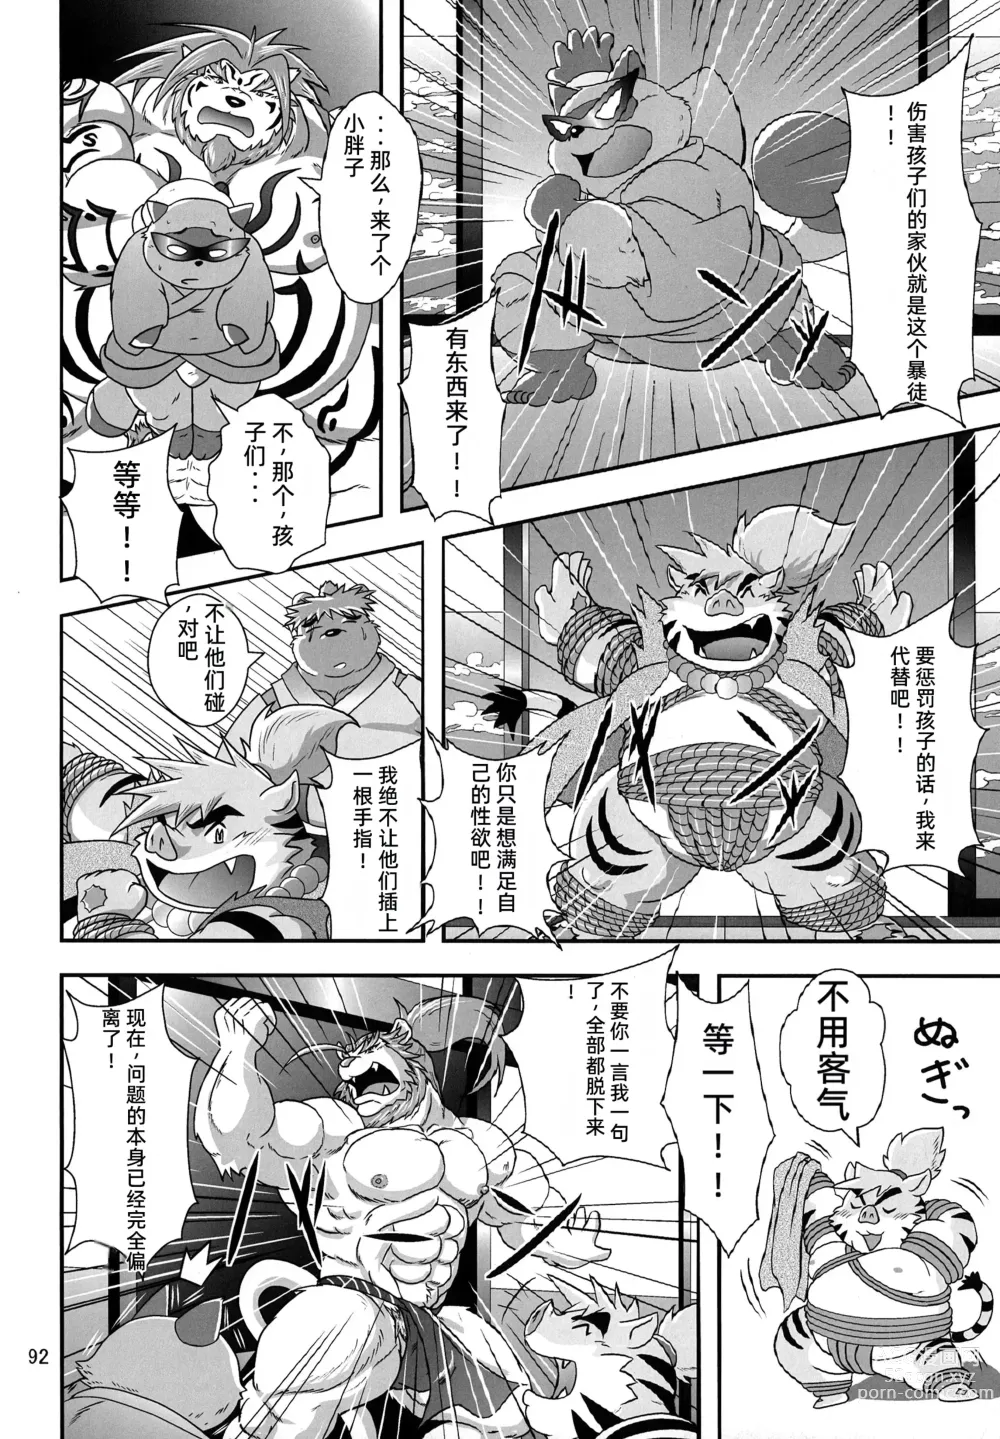 Page 91 of doujinshi Kemono no Roukaku - Utage